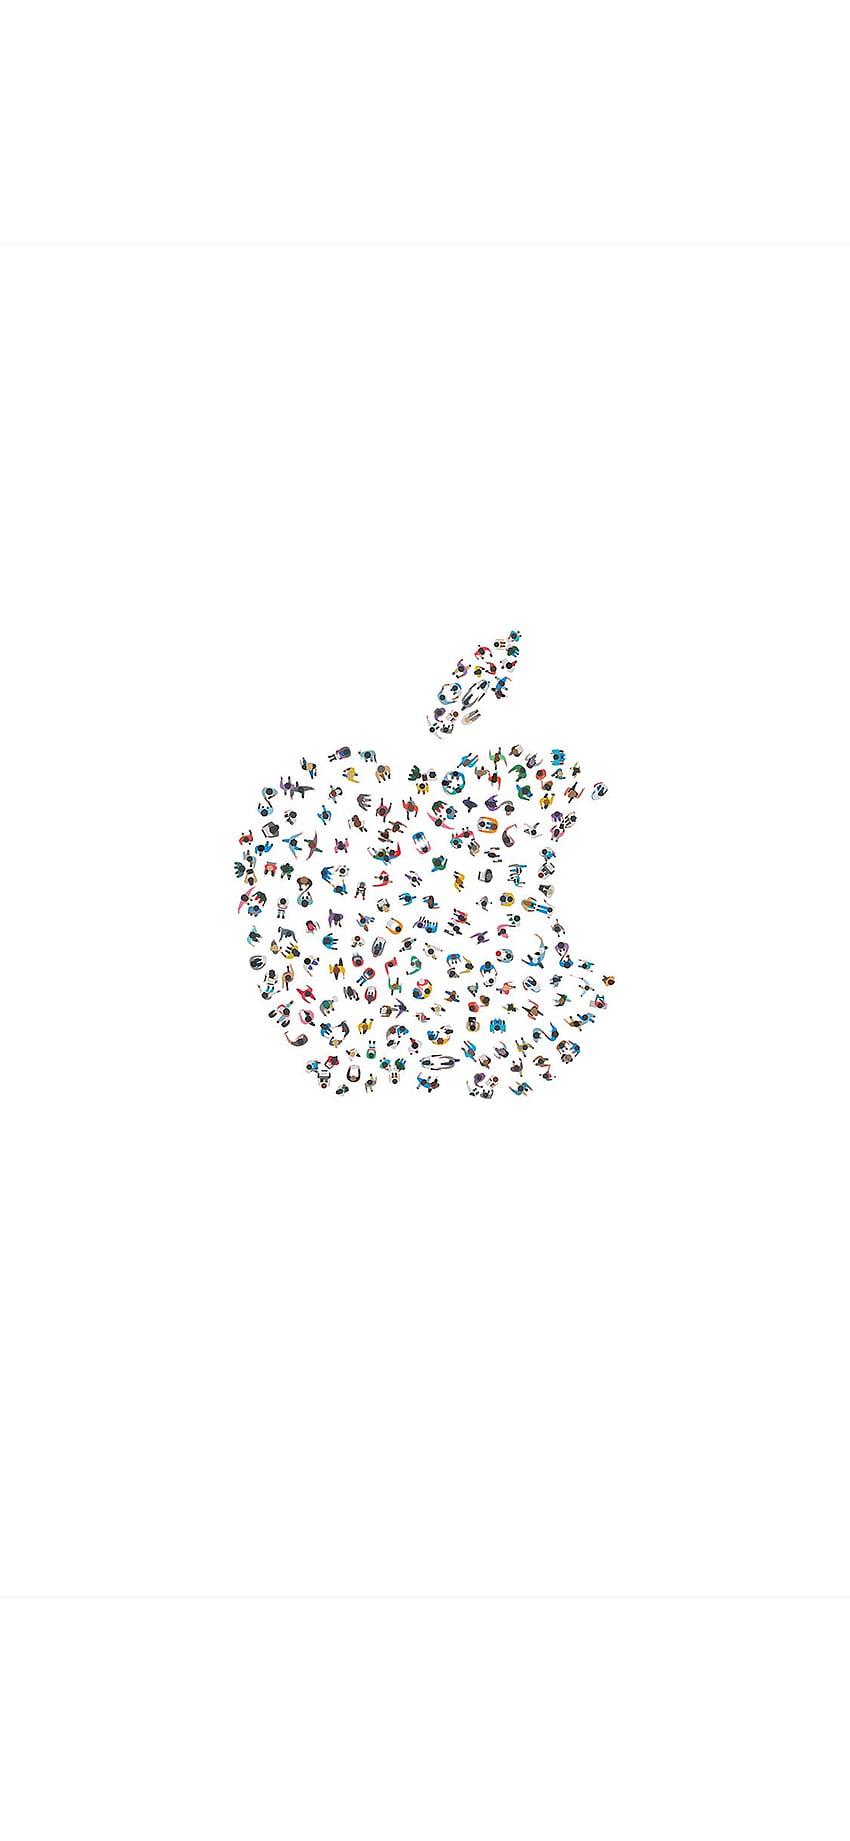 iPhoneX. wwdc apple logo blanco mínimo ilustración arte fondo de pantalla del teléfono